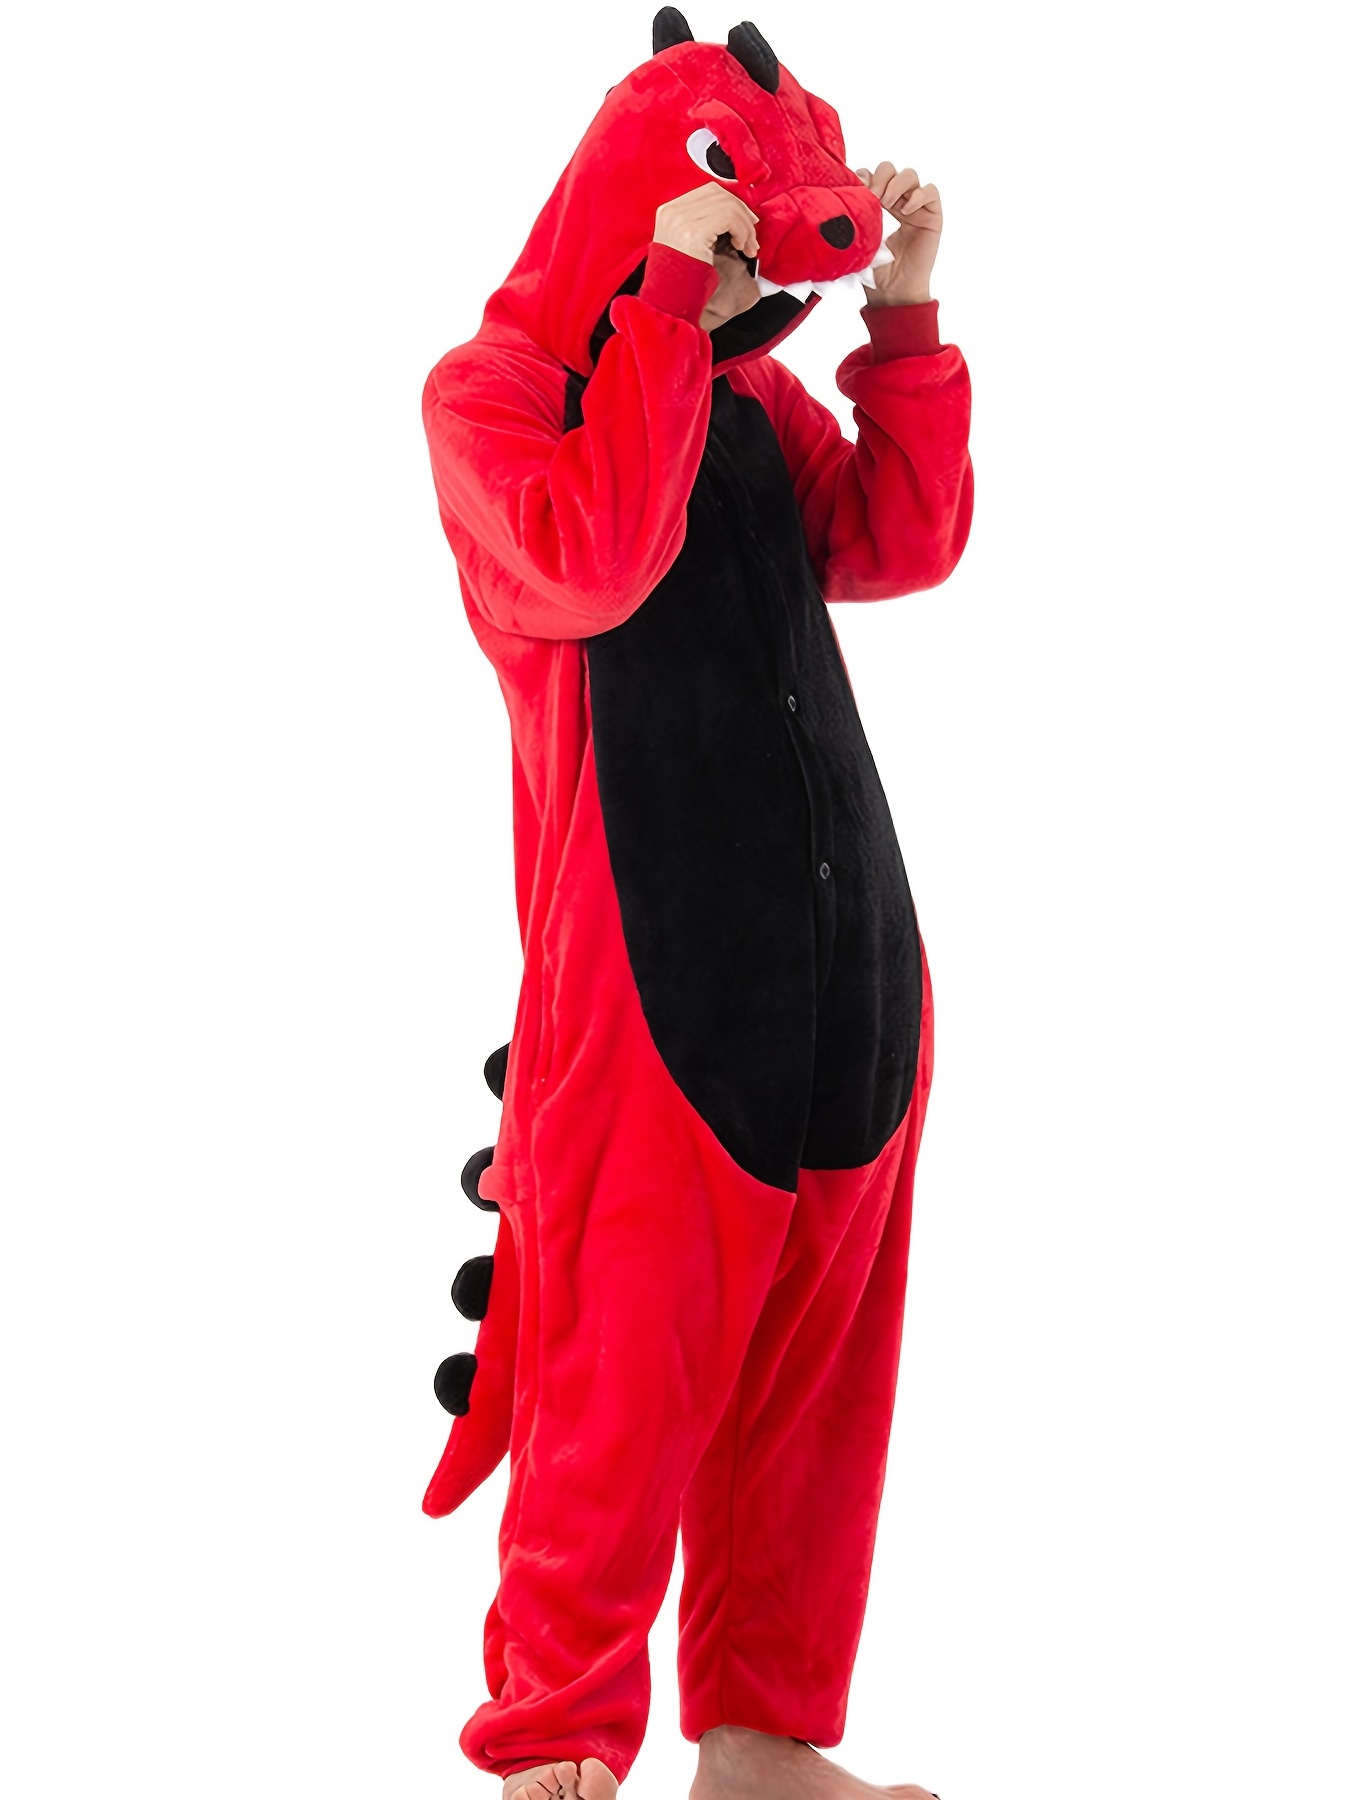 Costume De Dinosaure Pour Adultes - Livraison Gratuite Pour Les